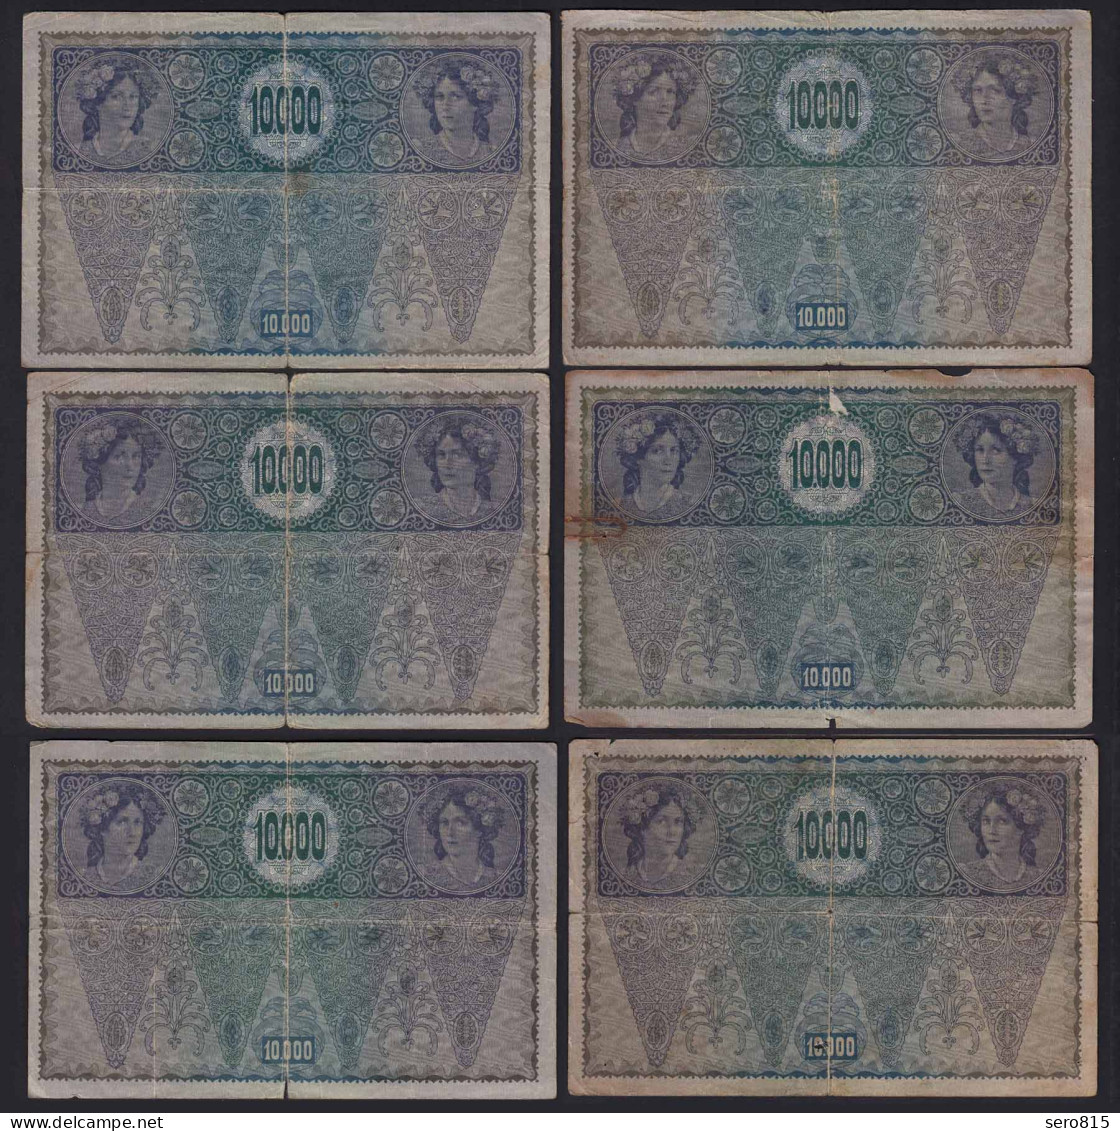 Österreich - Austria 6 St. á 10000 10.000 Kr. 1919 Pick 66 2. Auflage Gebraucht - Oesterreich